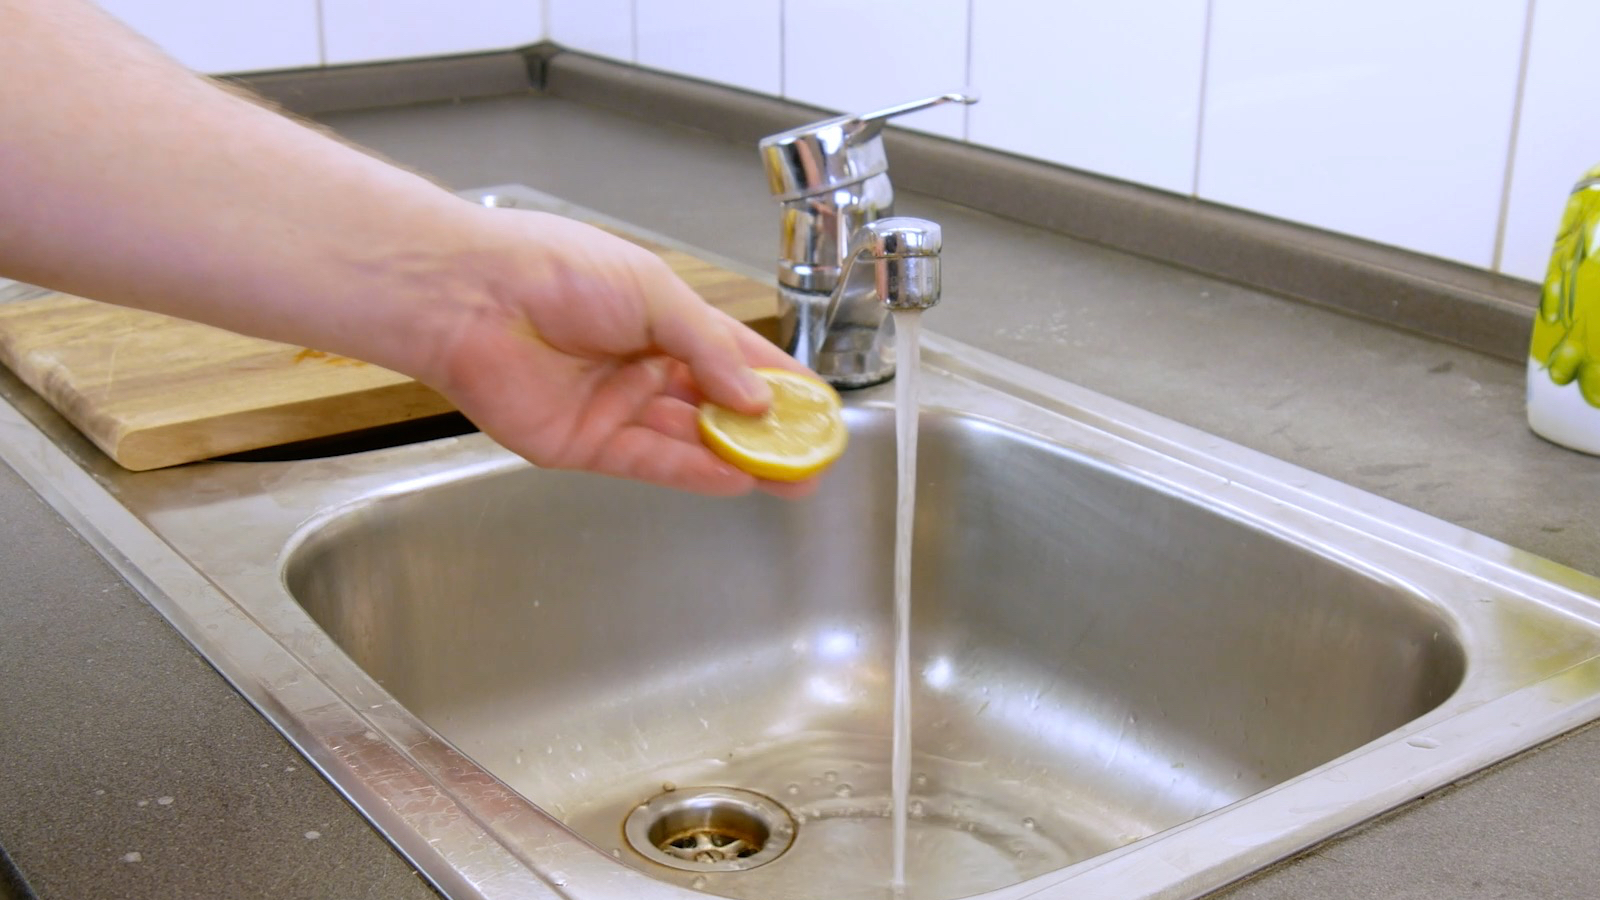 rondelle de citron tenue dans une main qui va passer sous l'eau d'un robinet donc pour se laver les mains